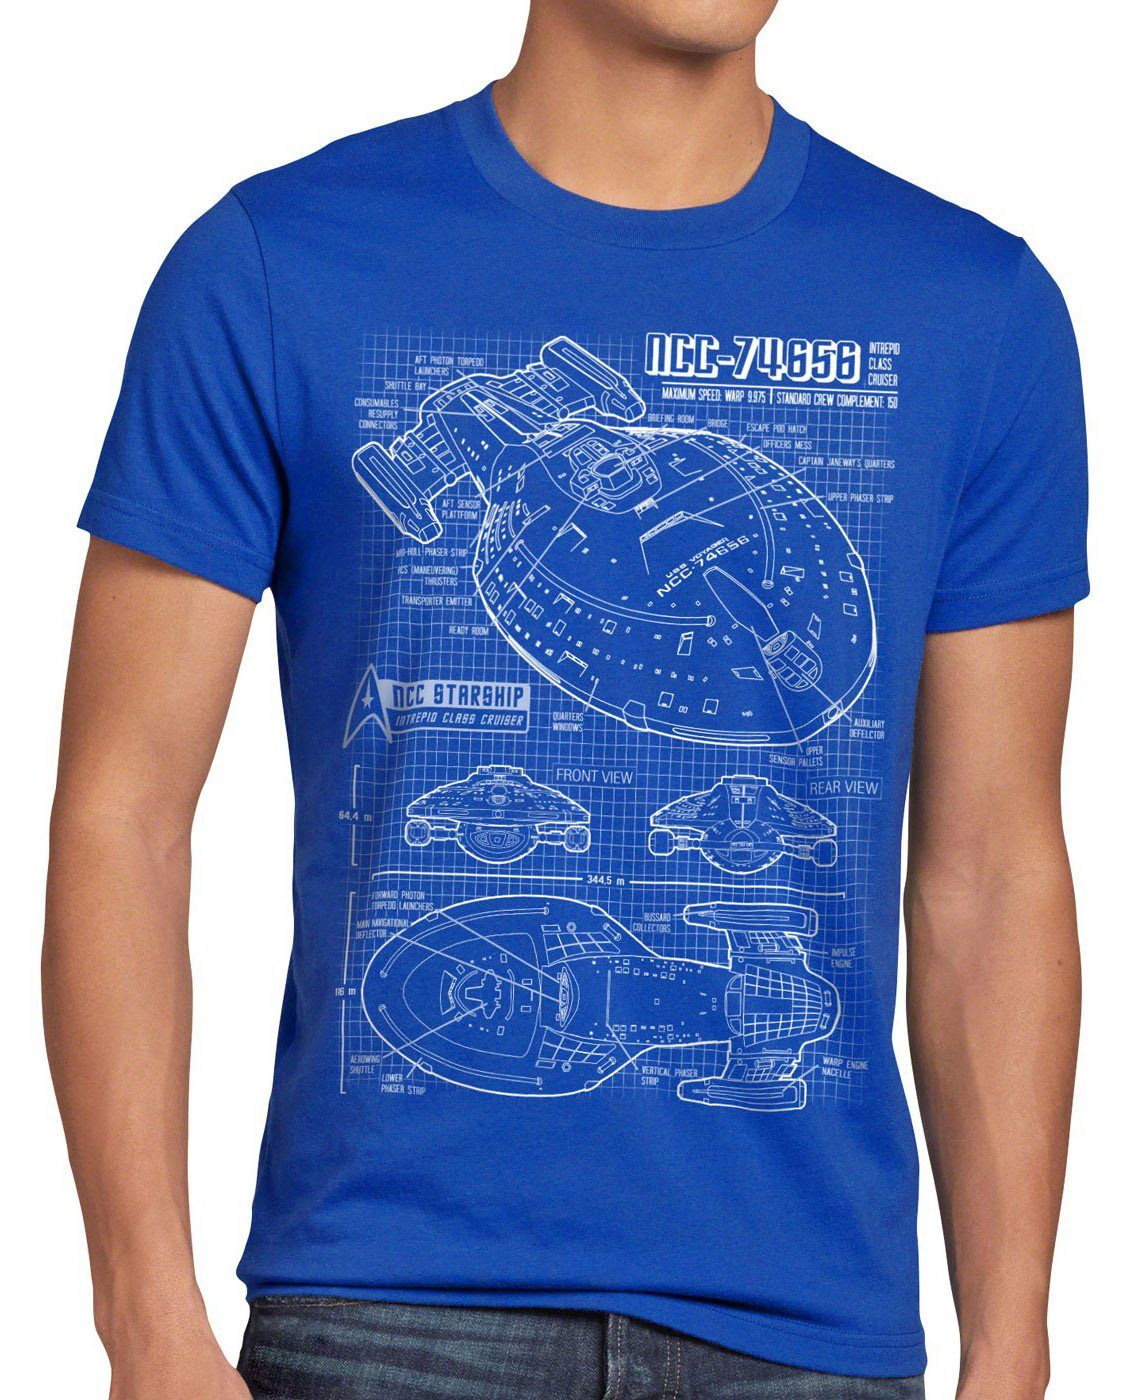 Voyager trek star trekkie sternenflotte kathryn blau style3 Print-Shirt Herren janeway T-Shirt NCC-74656